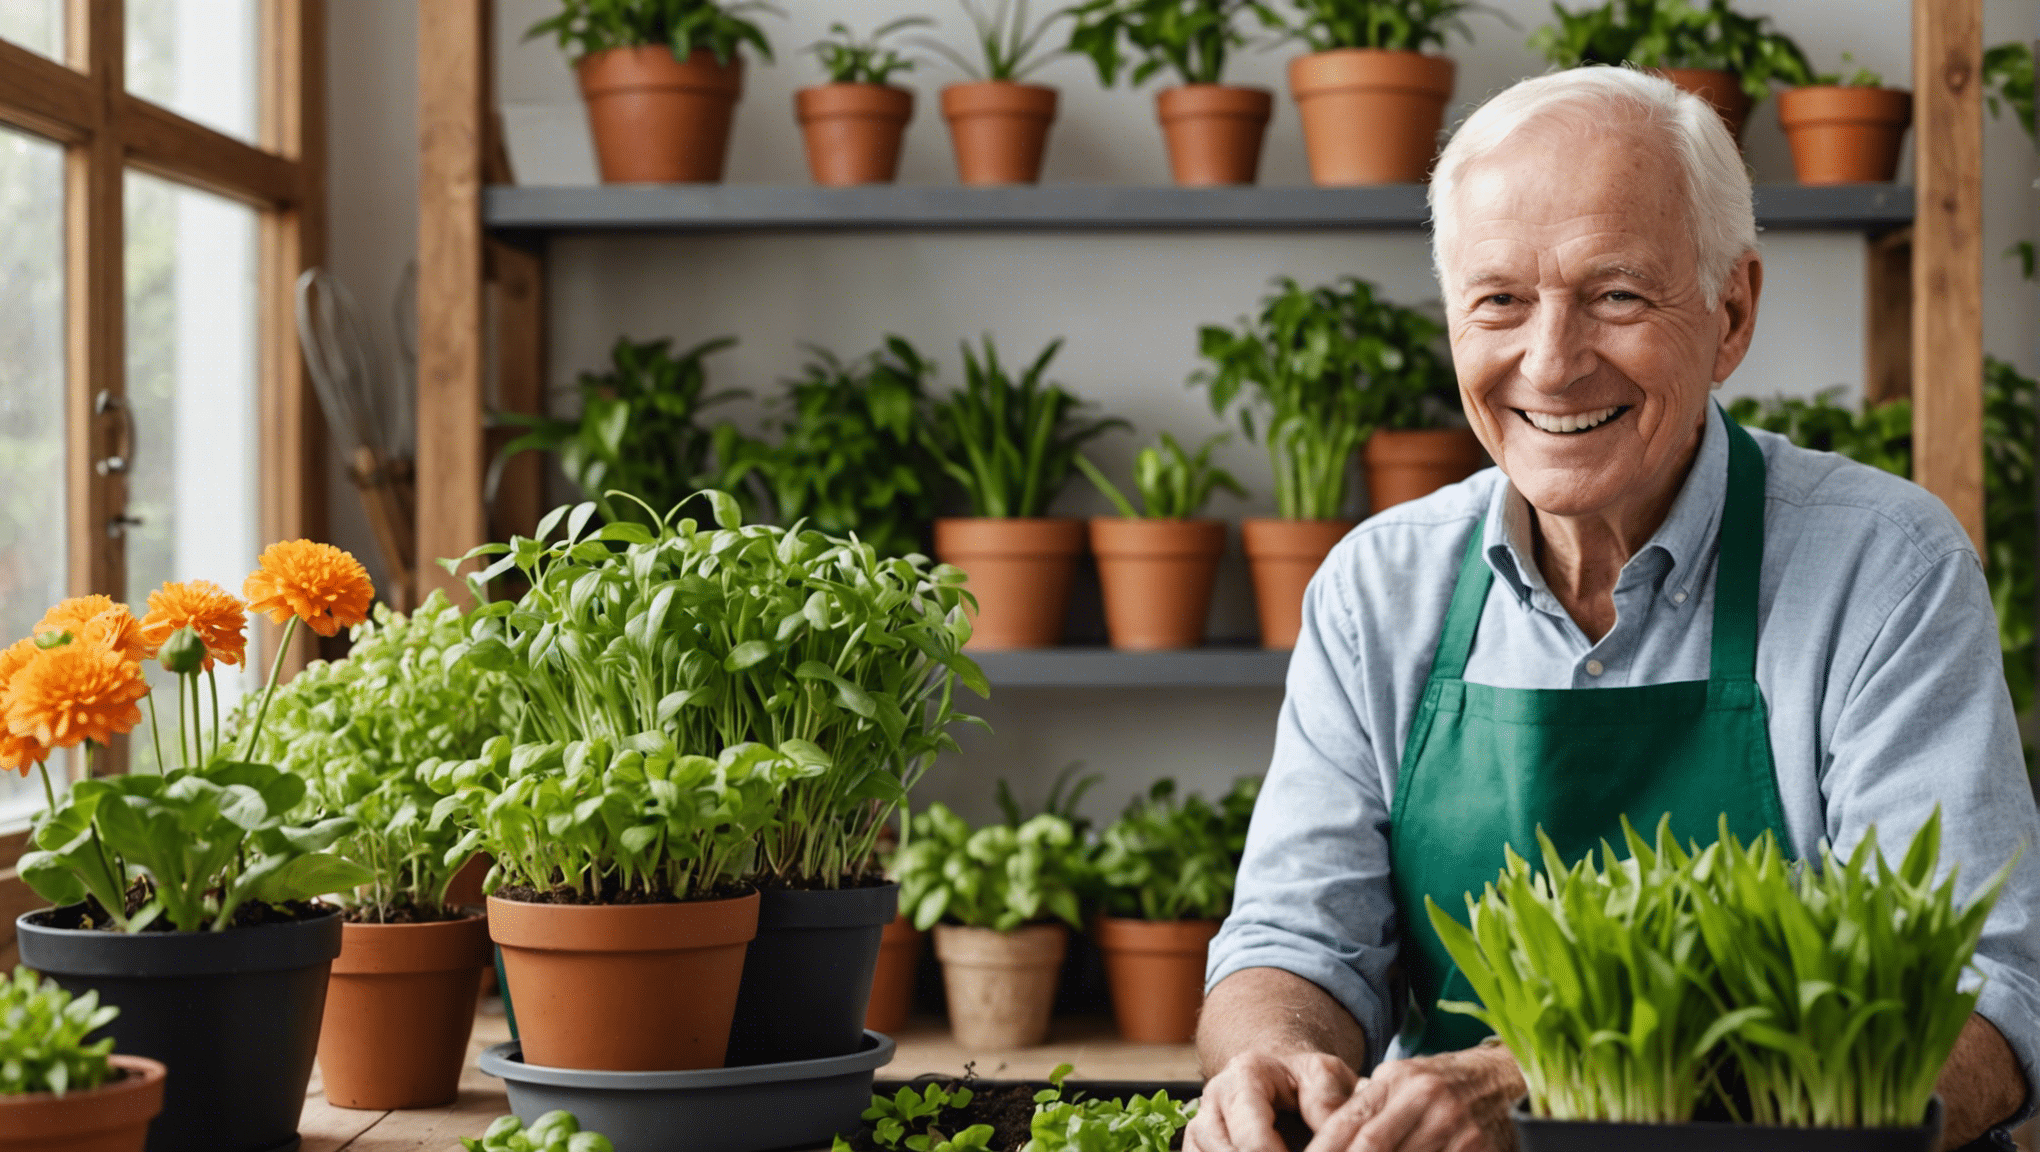 scopri i vantaggi delle idee di giardinaggio indoor per gli anziani e come possono migliorare il loro benessere generale e la qualità della vita.